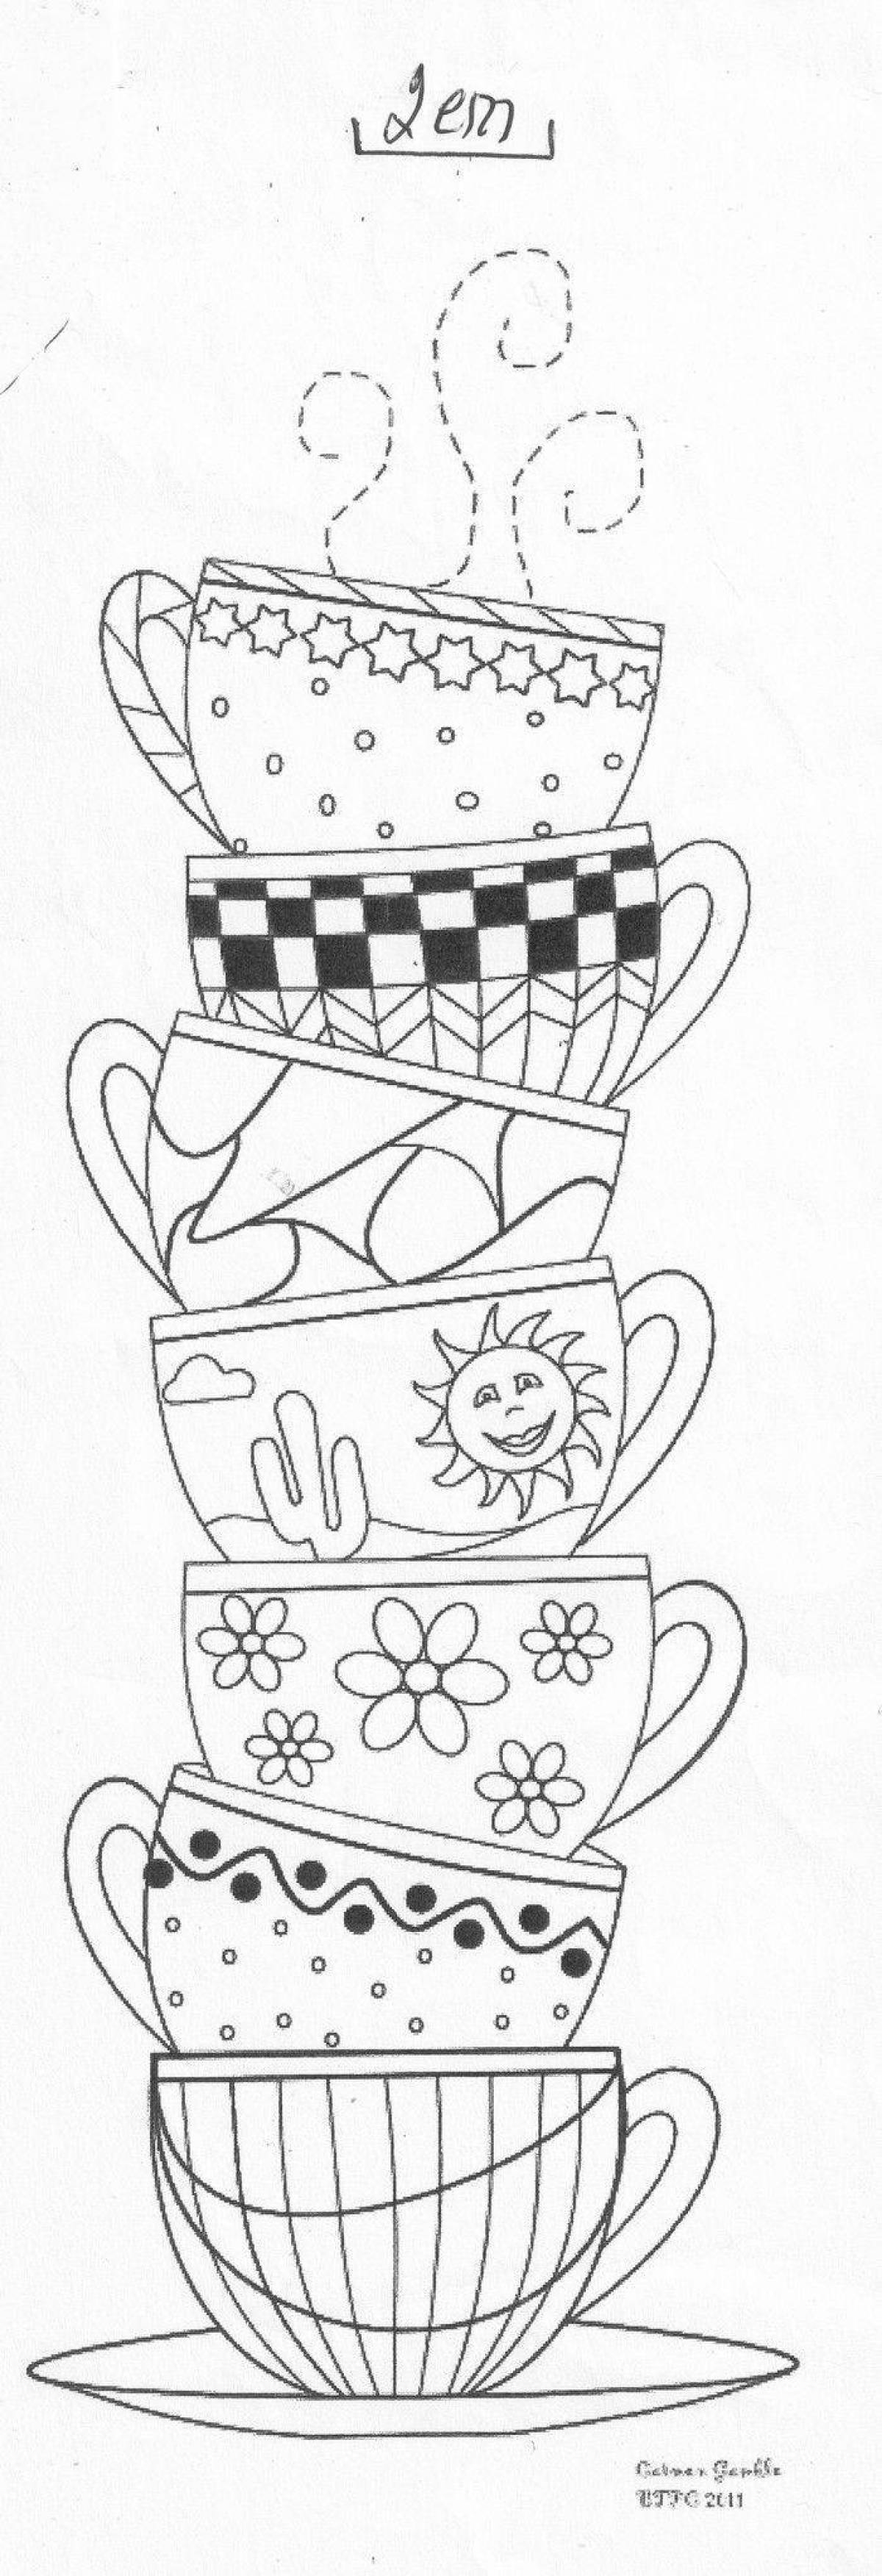 Coloring page charming mug with polka dots